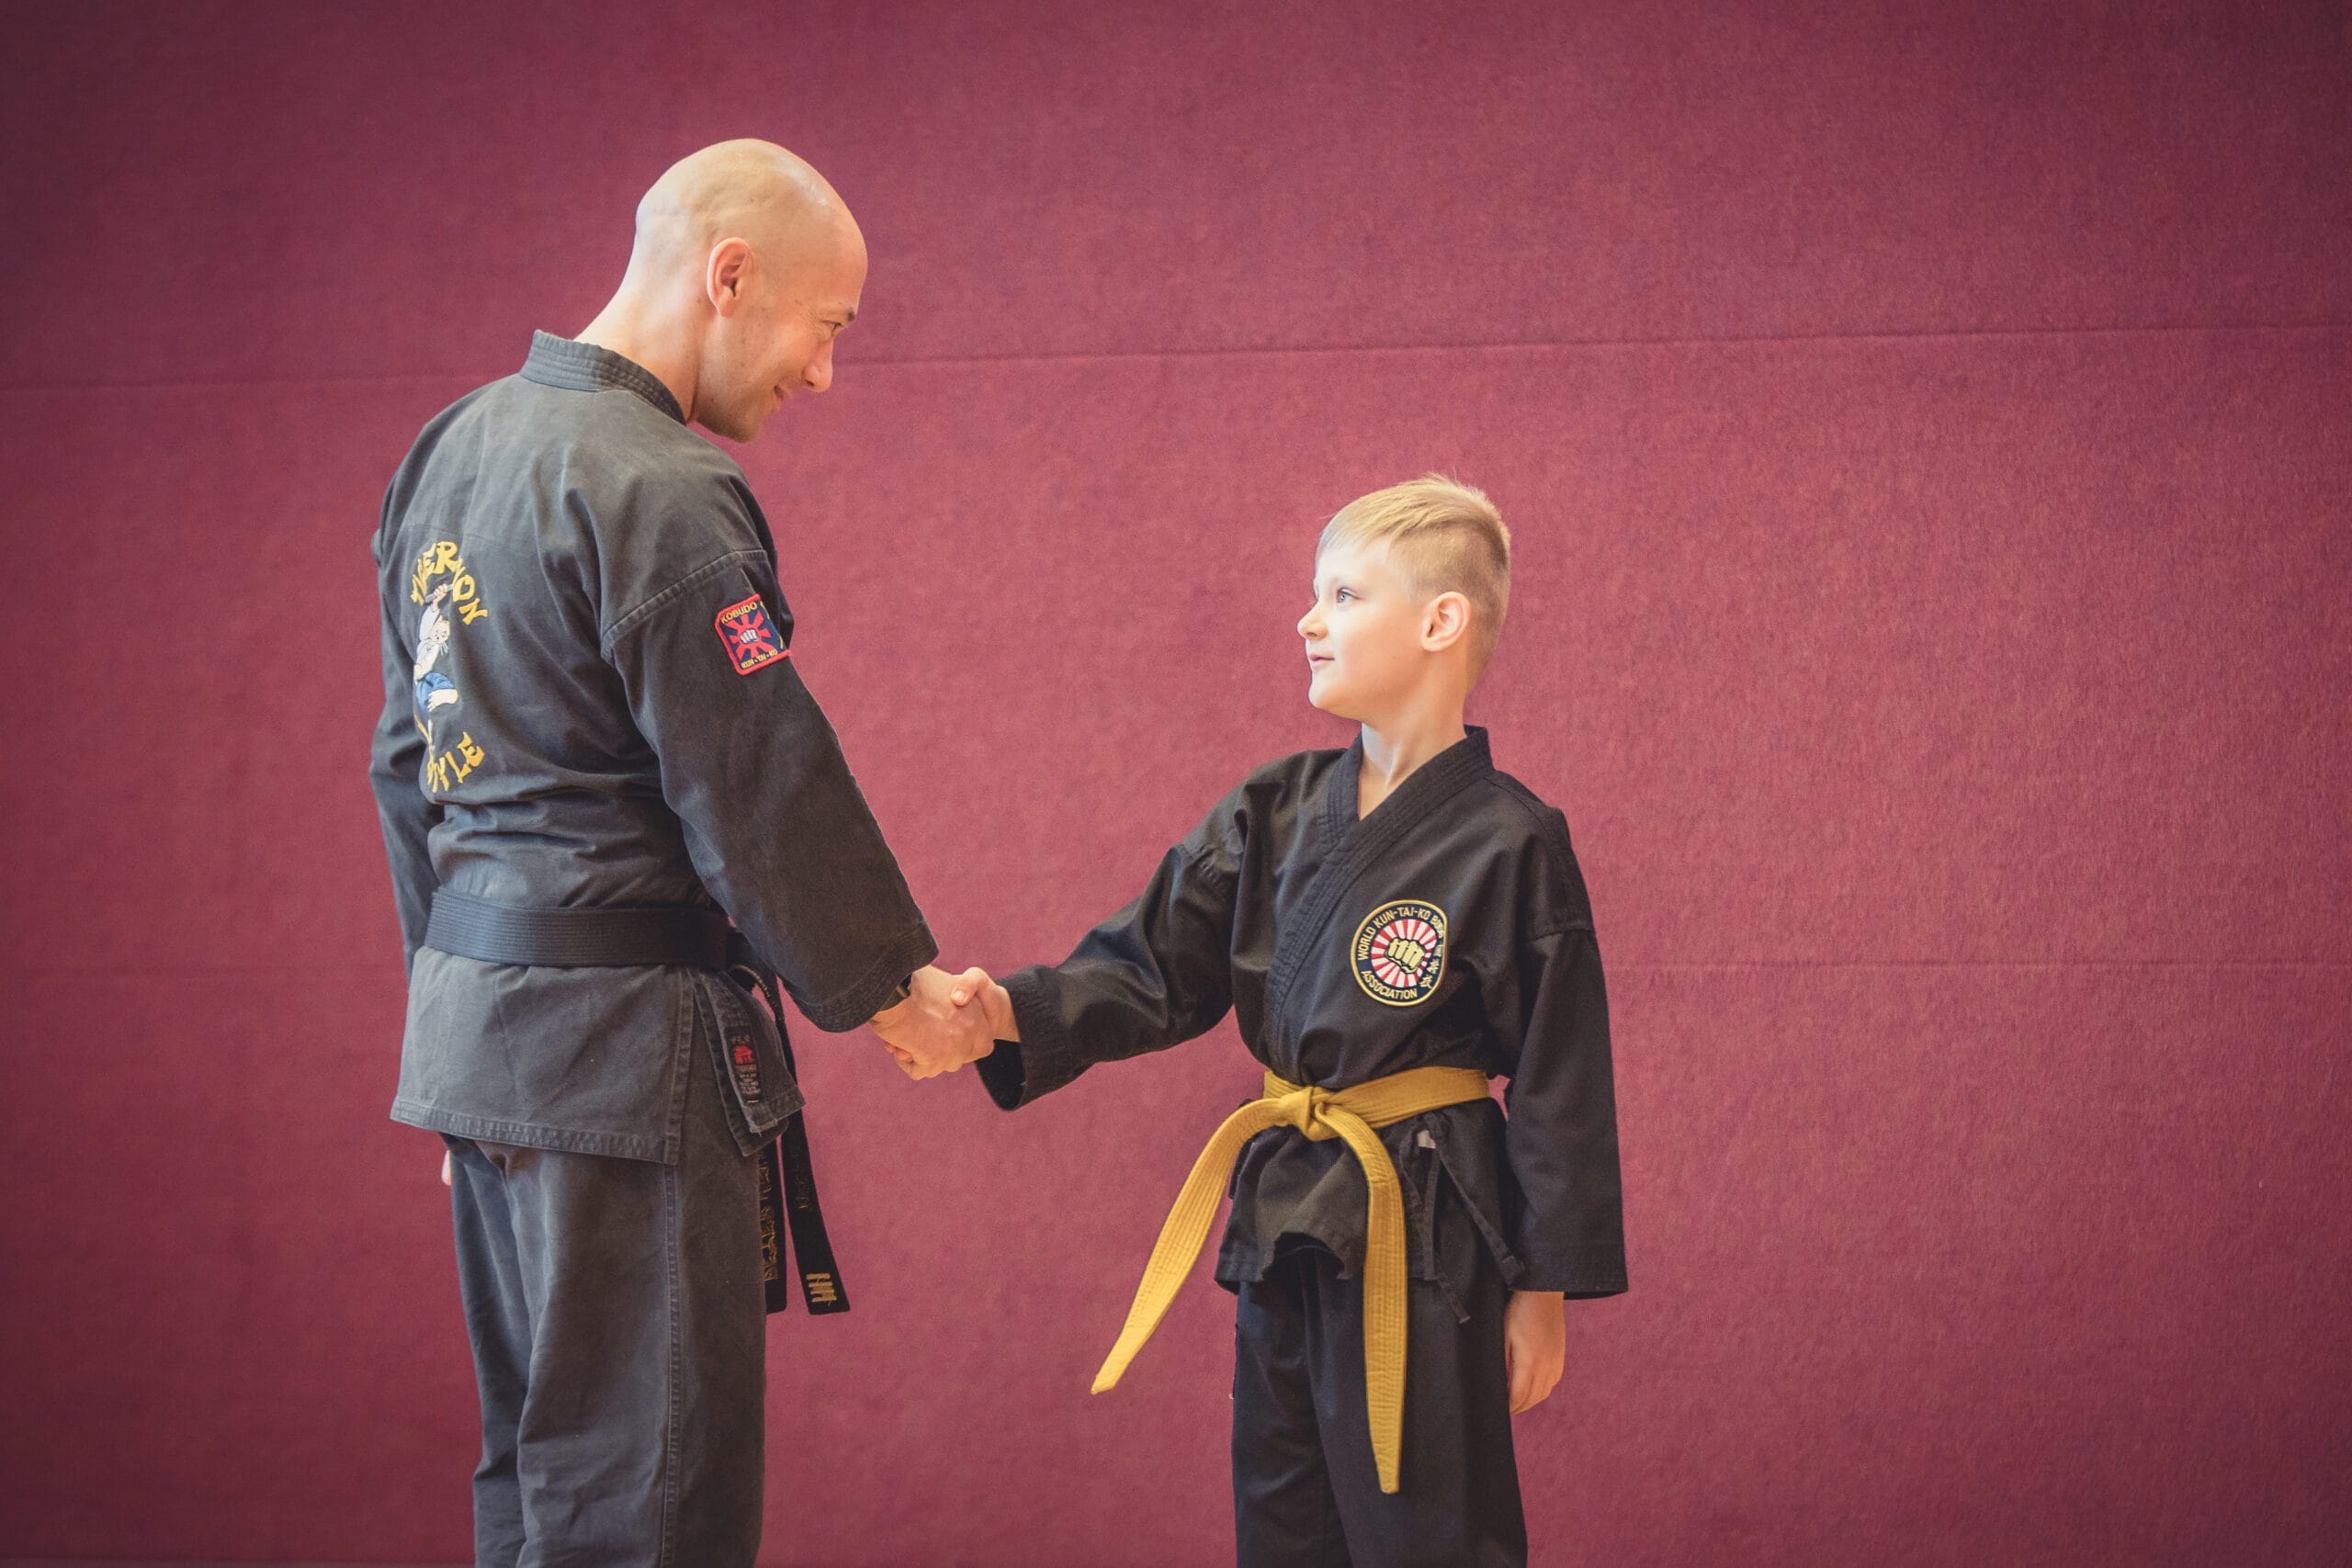 Karateschüler begrüßt einen Karatelehrer, 5 Verhaltensregeln für Kinder im Dojo